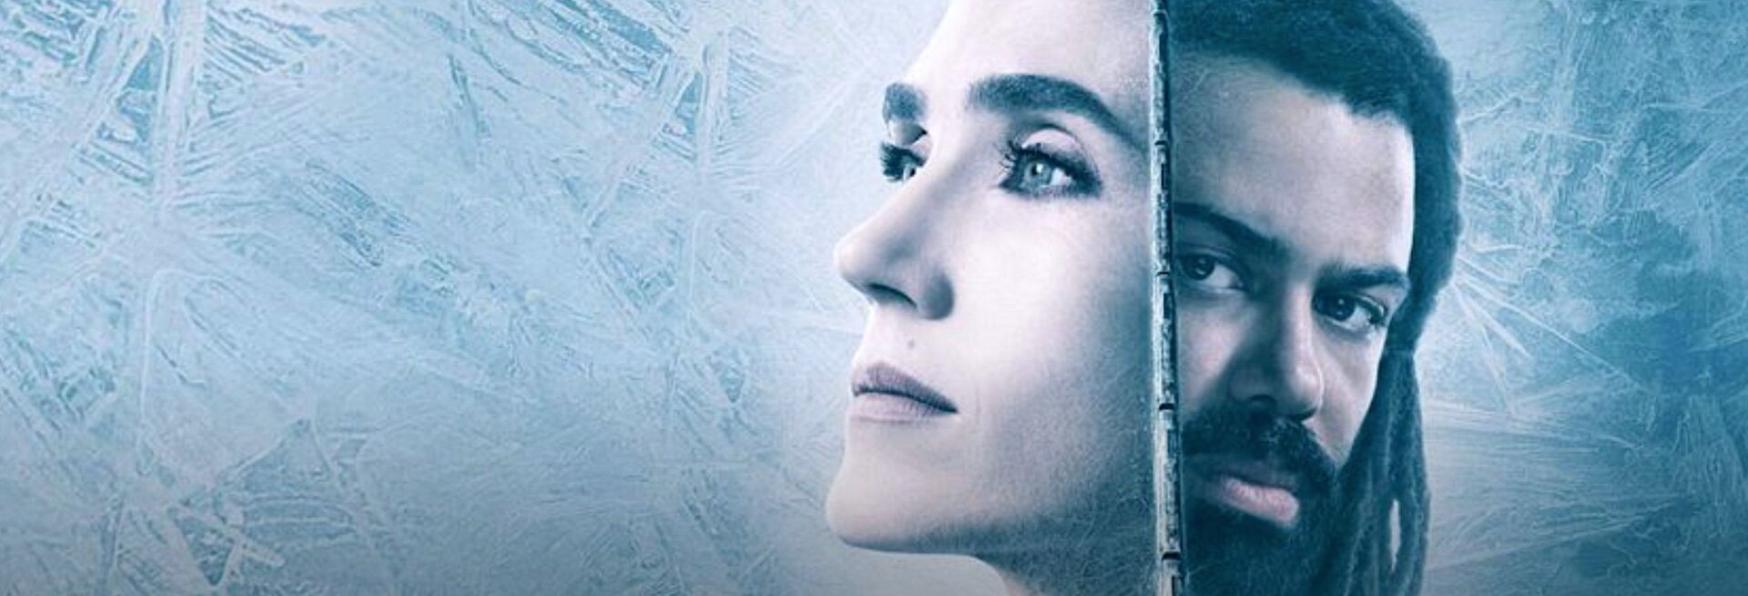 Snowpiercer: il nuovo Trailer Ufficiale della Serie TV targata TNT